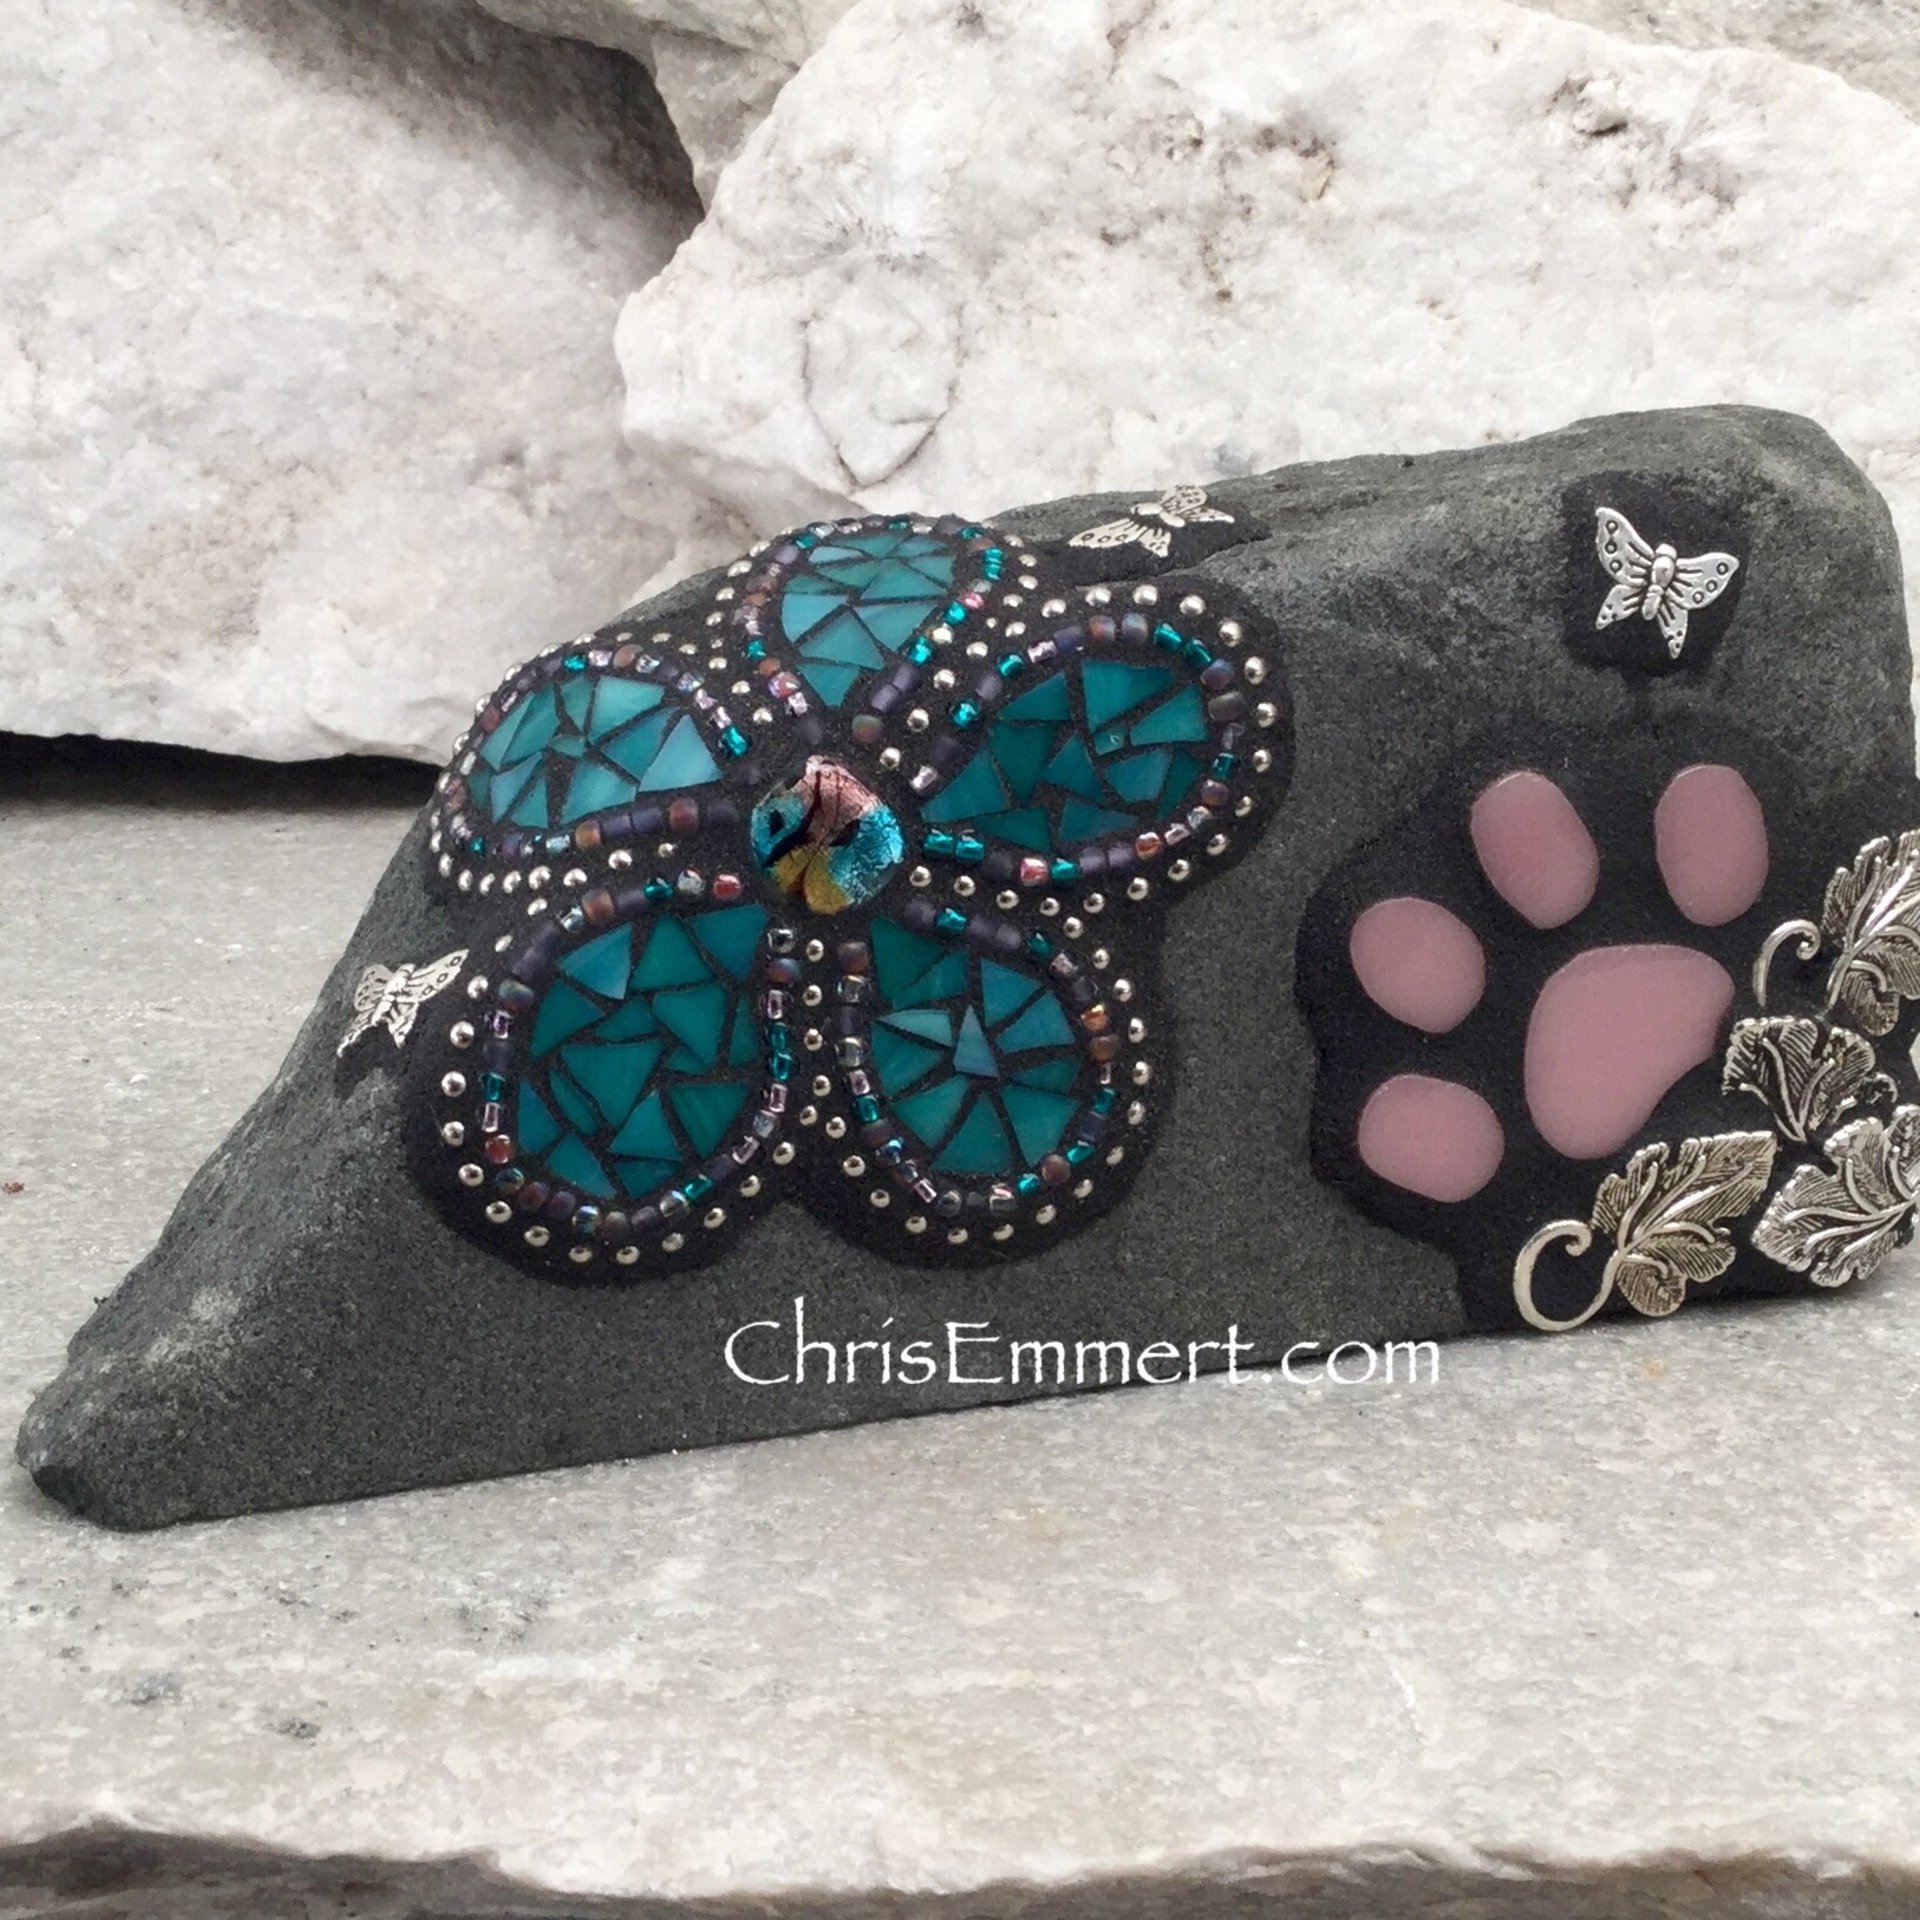 Custom Teal Flower, Paw, Pet Memorial, Garden Stone,  Gardener Gift